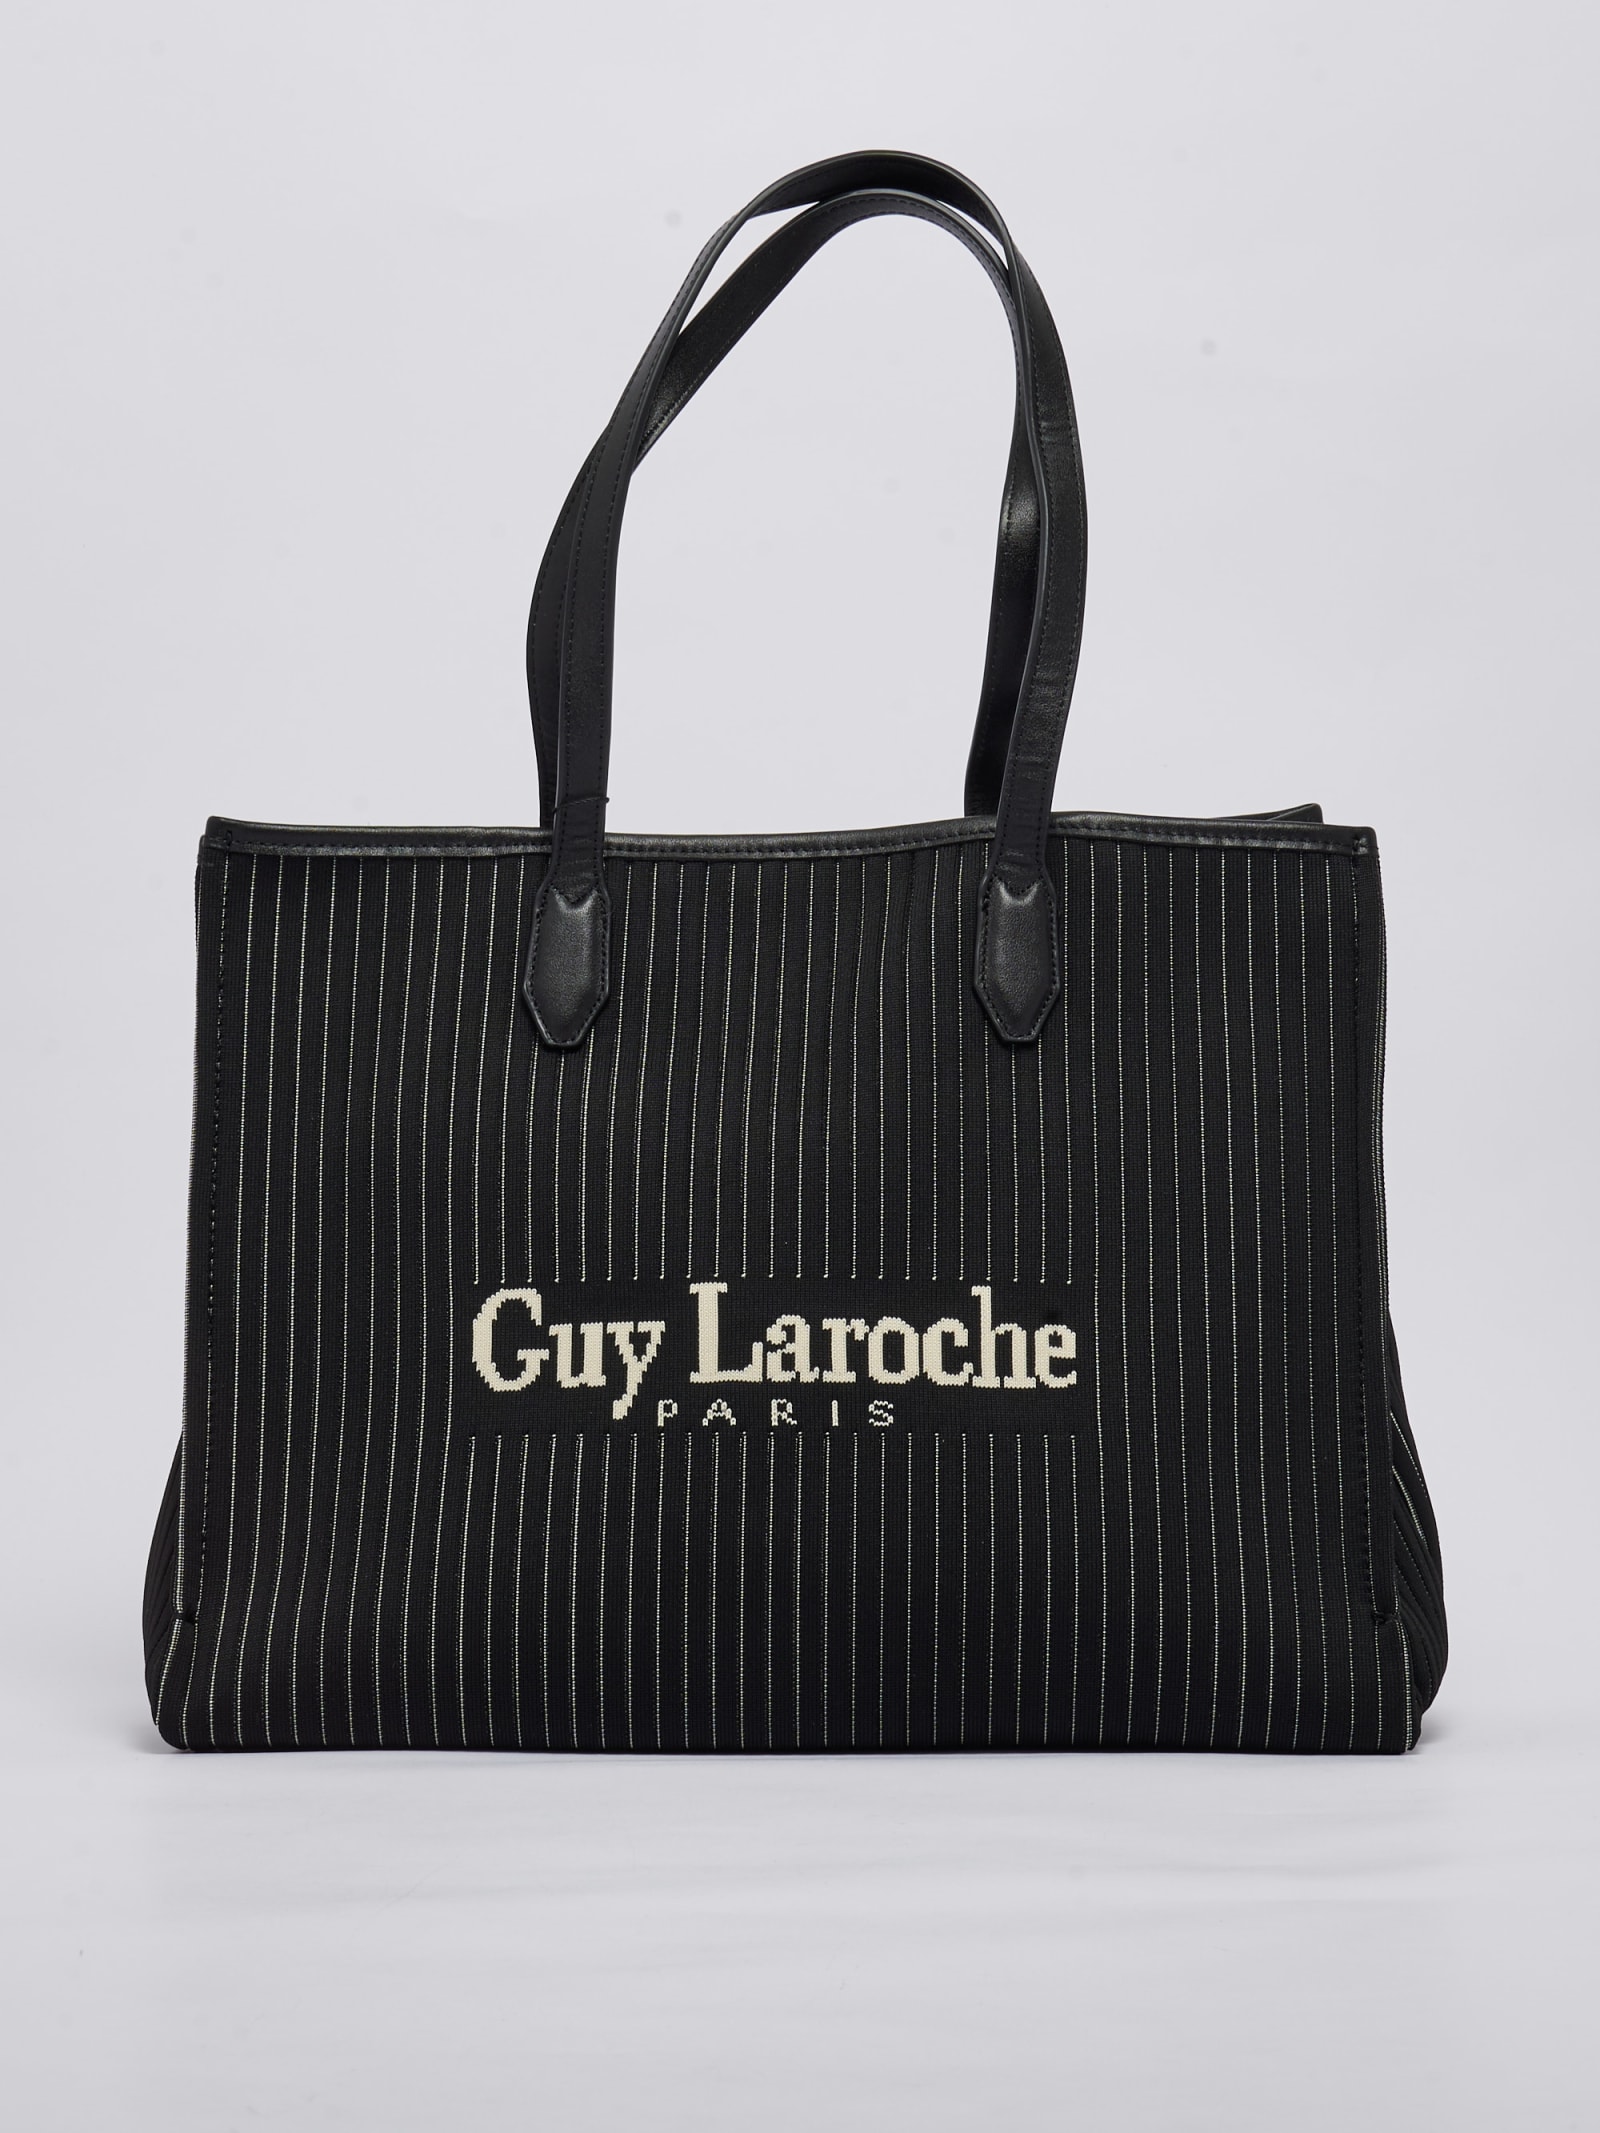 Guy Laroche, Bags, Guy Laroche Purseside Pack